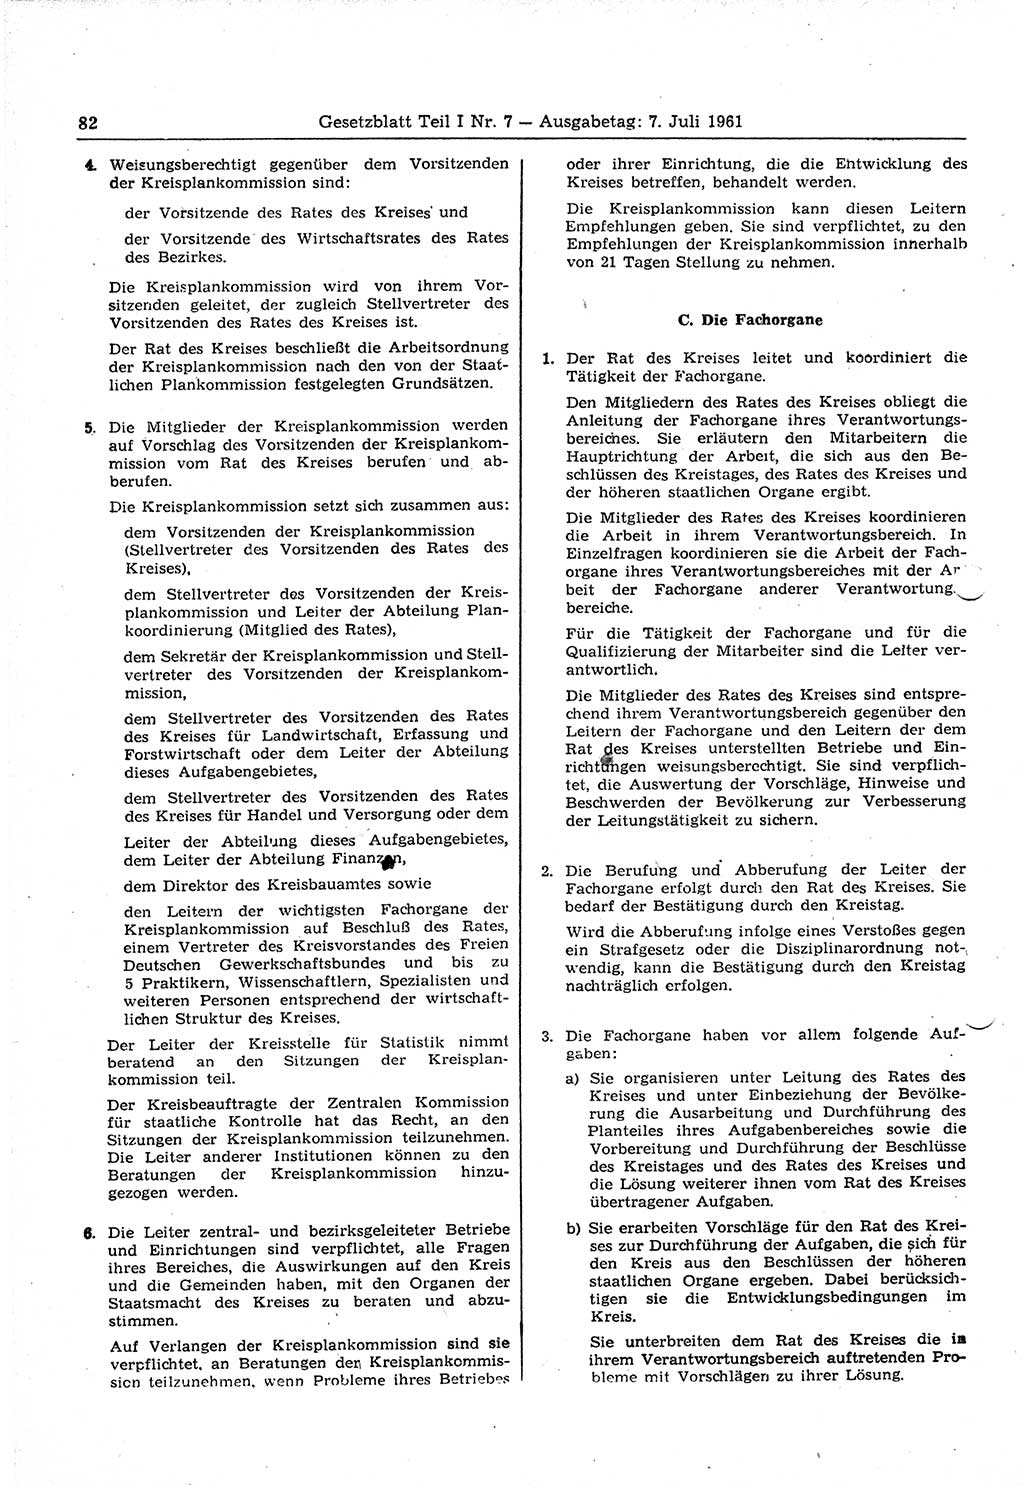 Gesetzblatt (GBl.) der Deutschen Demokratischen Republik (DDR) Teil Ⅰ 1961, Seite 82 (GBl. DDR Ⅰ 1961, S. 82)